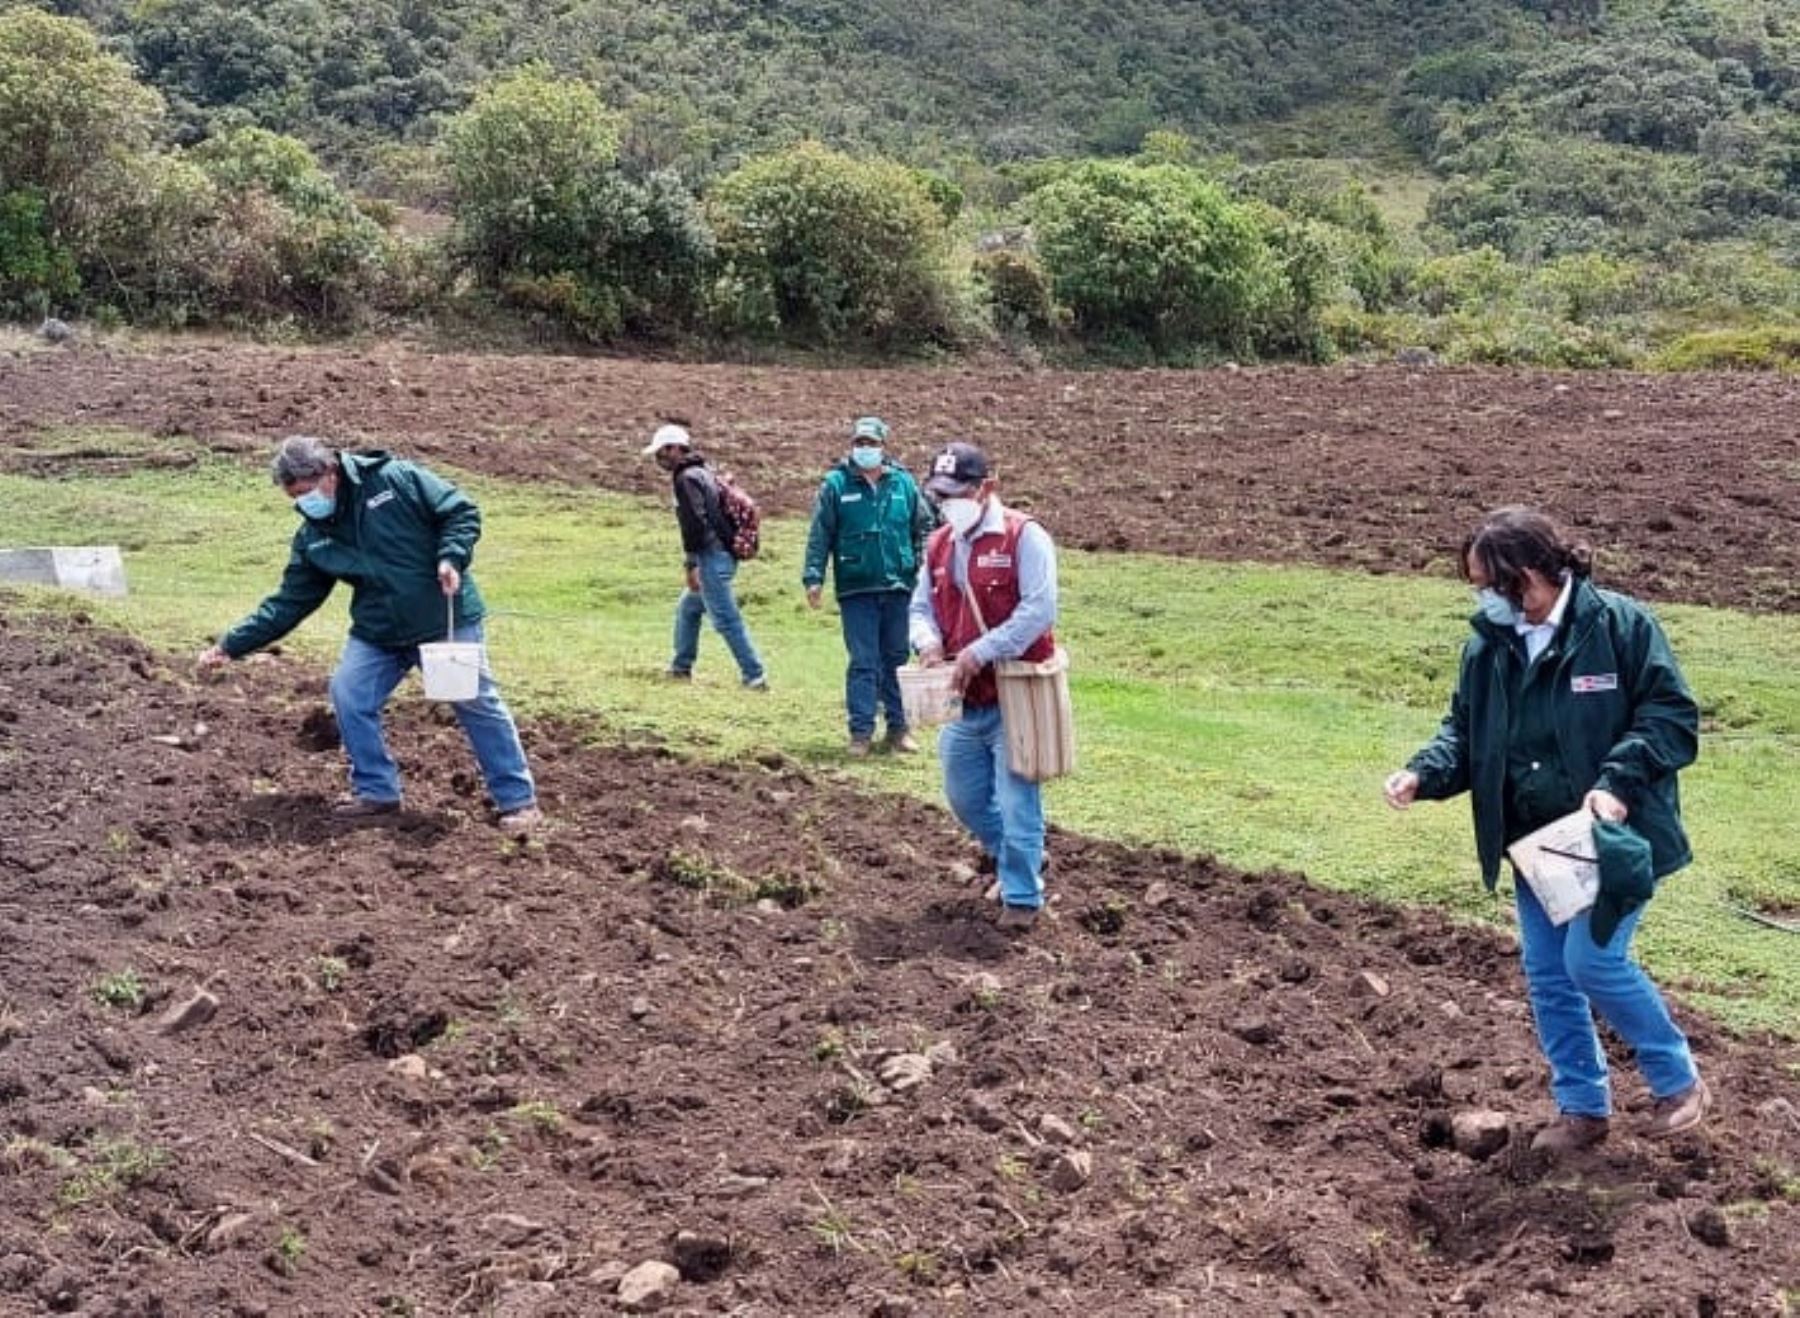 Ministerio de Agricultura inicia campaña de siembras de pastos en Lambayeque y San Martín para impulsar ganadería de esas regiones. ANDINA/Difusión